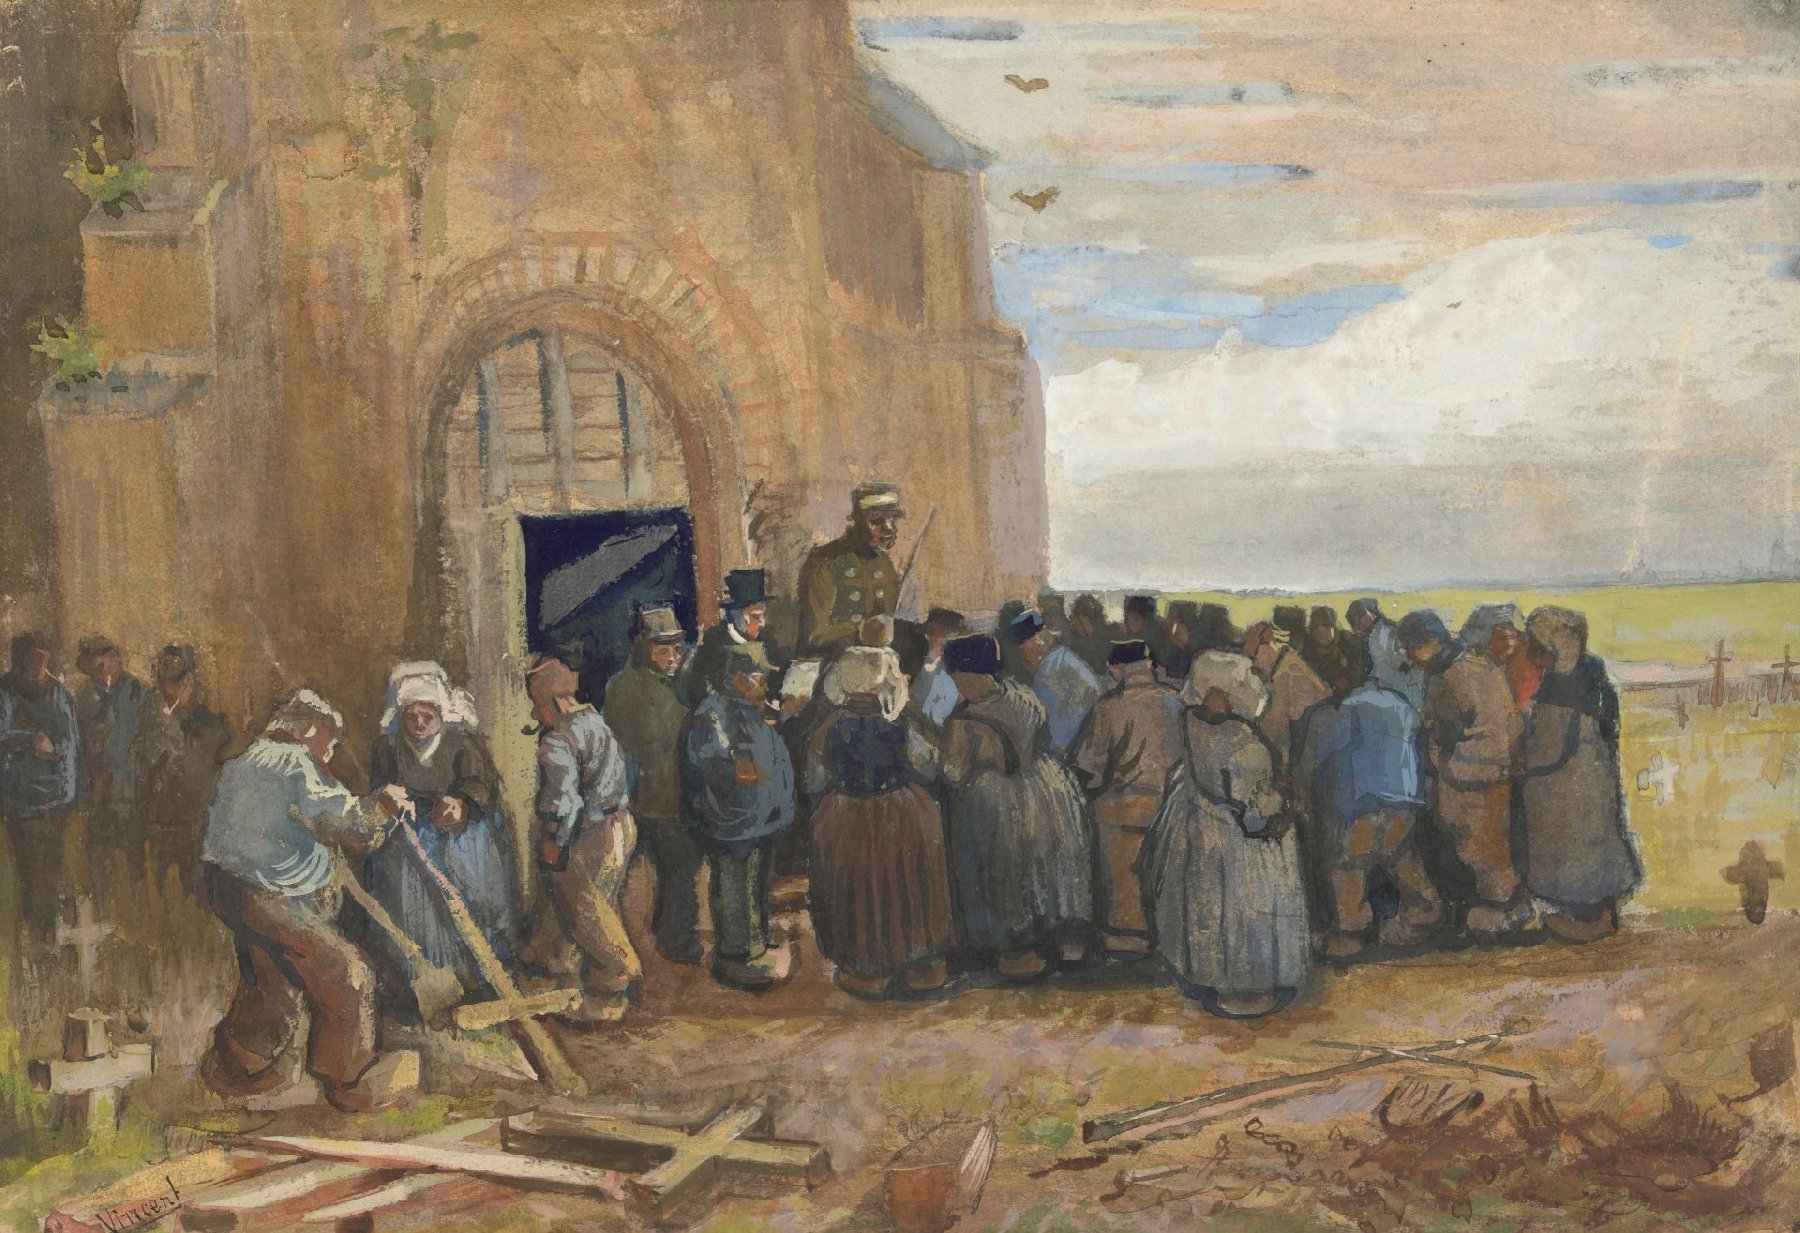 Verkoping van afbraak Vincent van Gogh (1853 - 1890), Nuenen, mei 1885